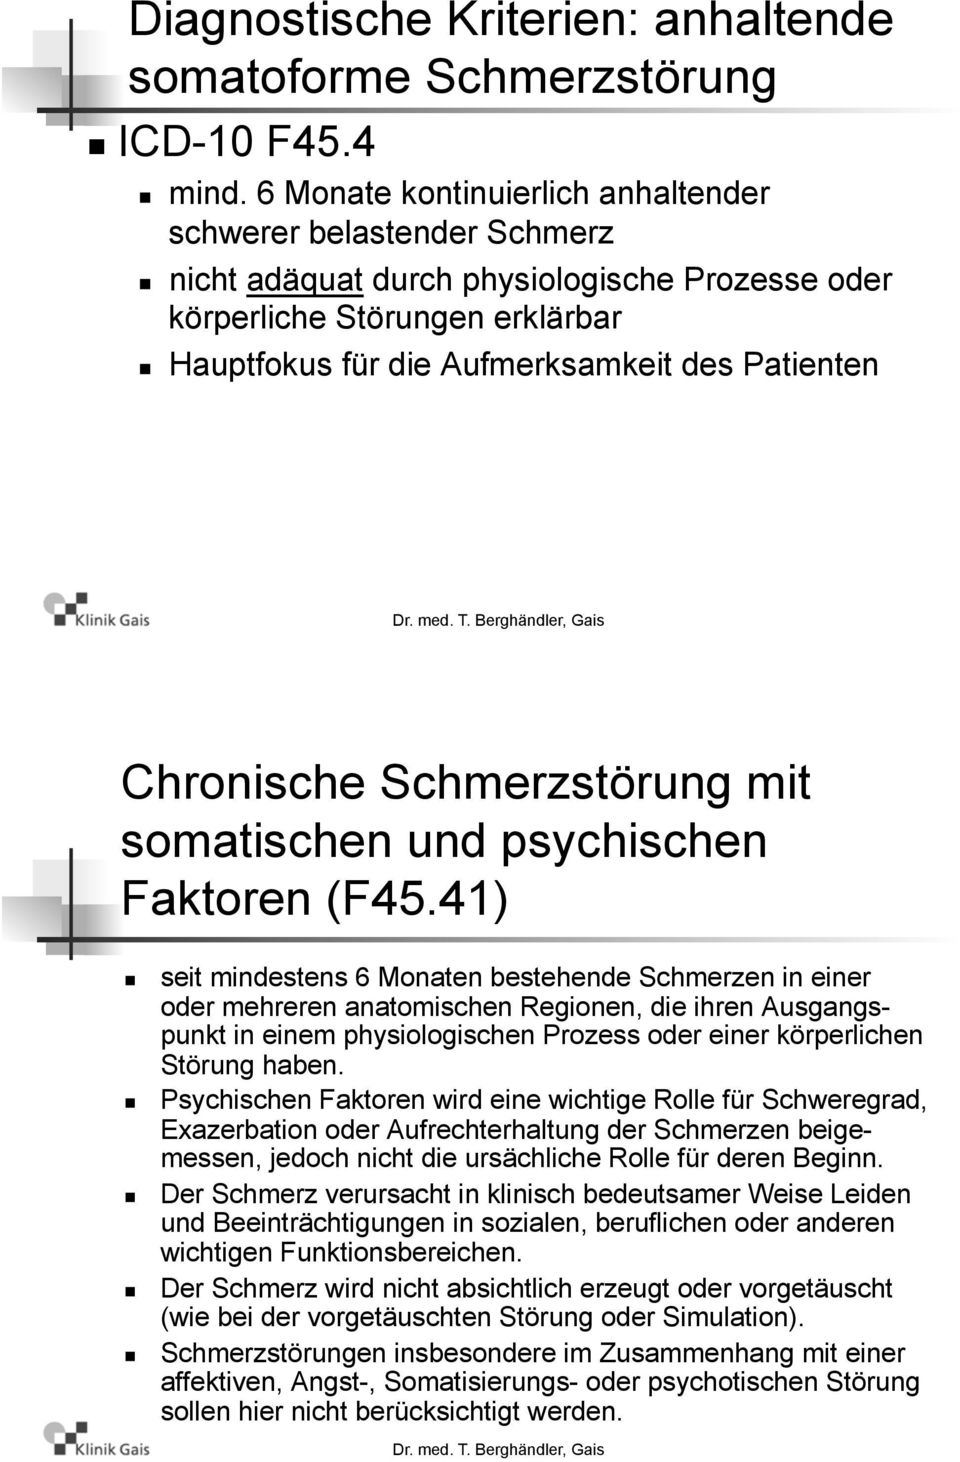 Chronische Schmerzstörung mit somatischen und psychischen Faktoren (F45.